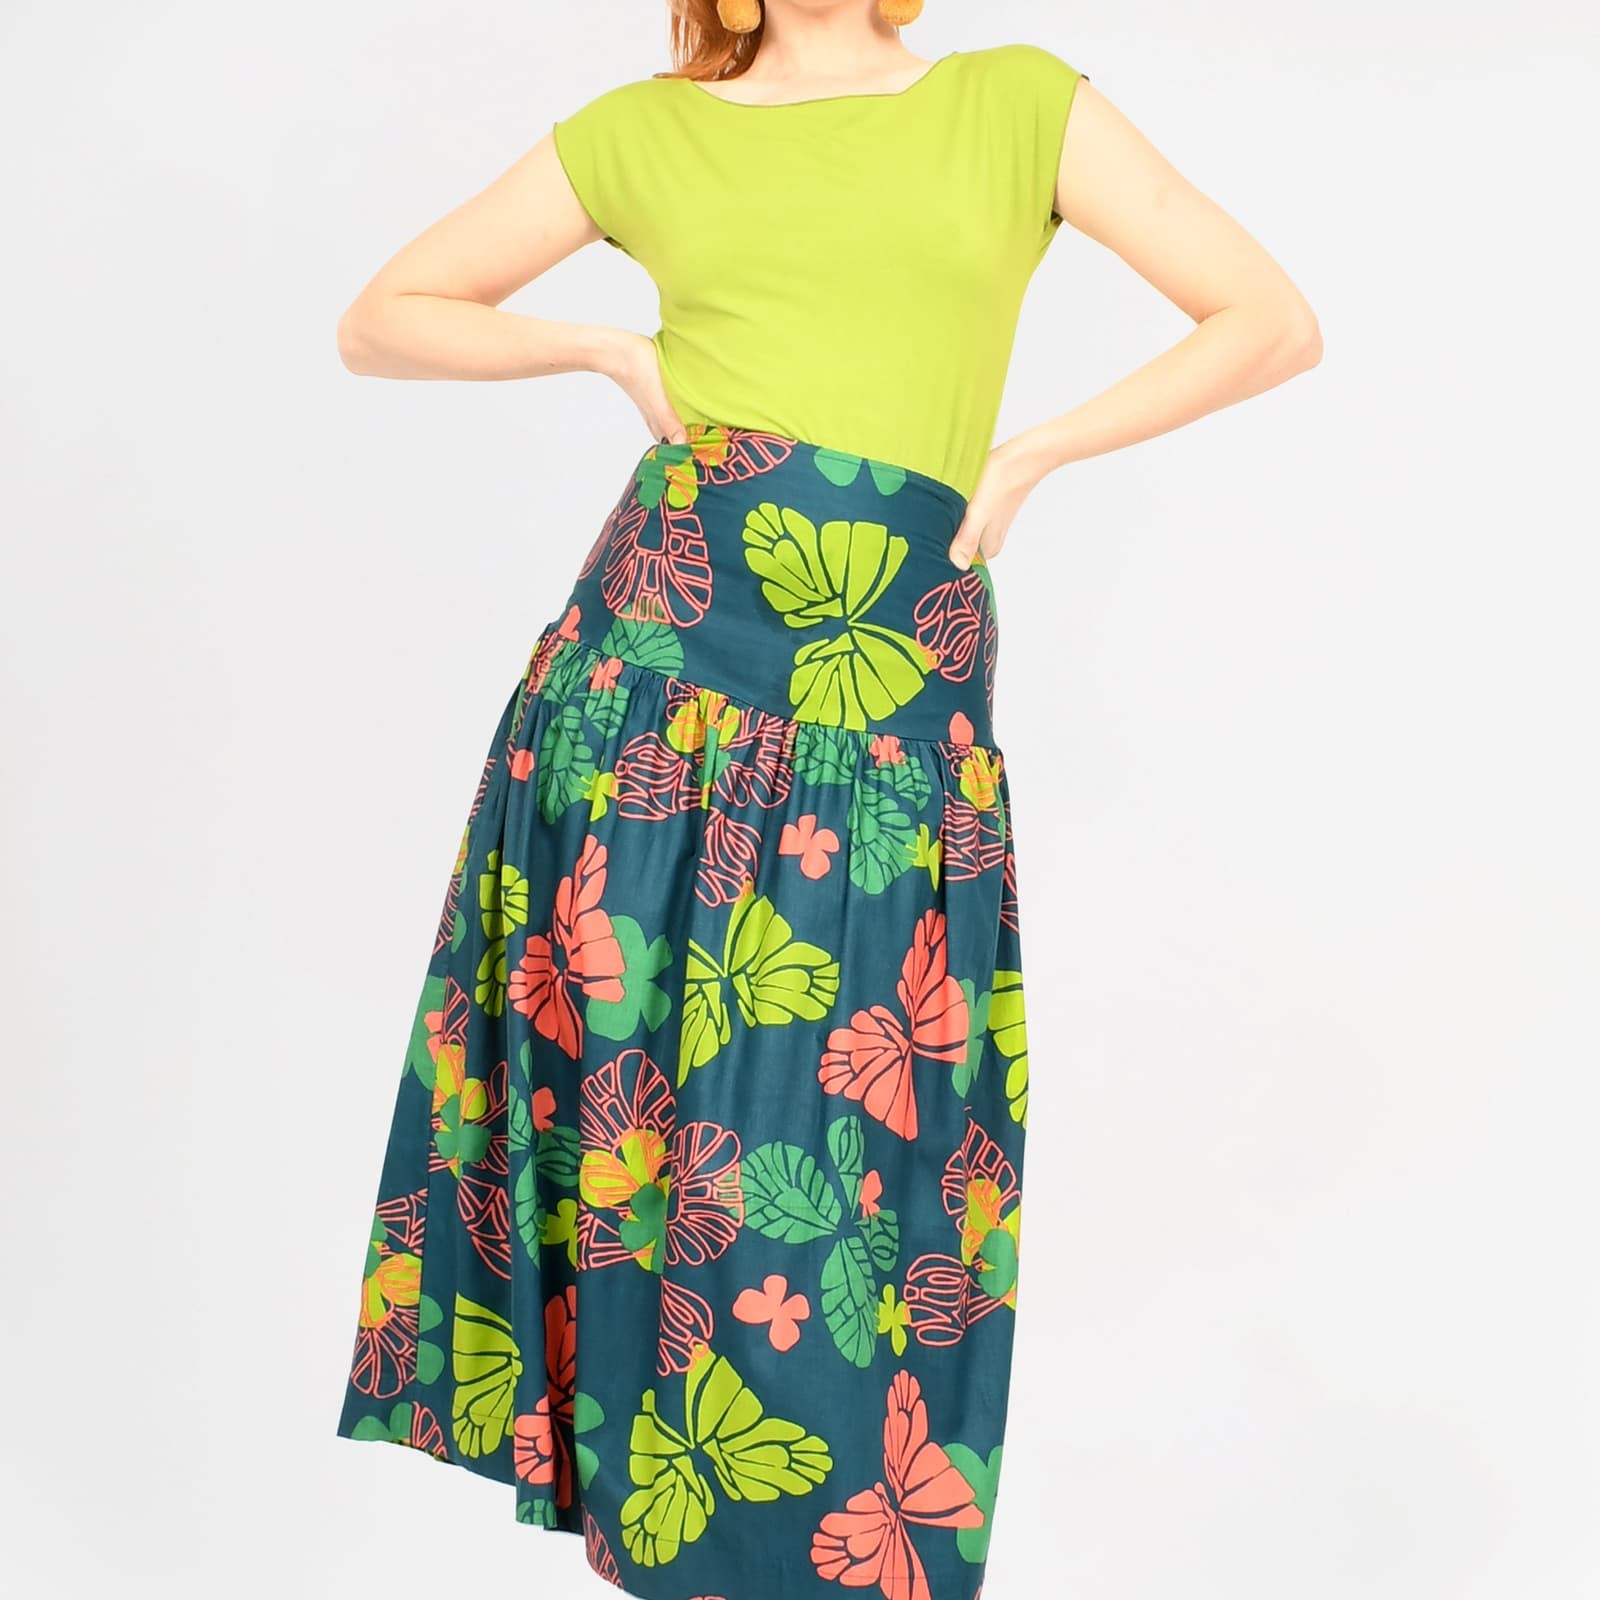 Lola Midi Skirt